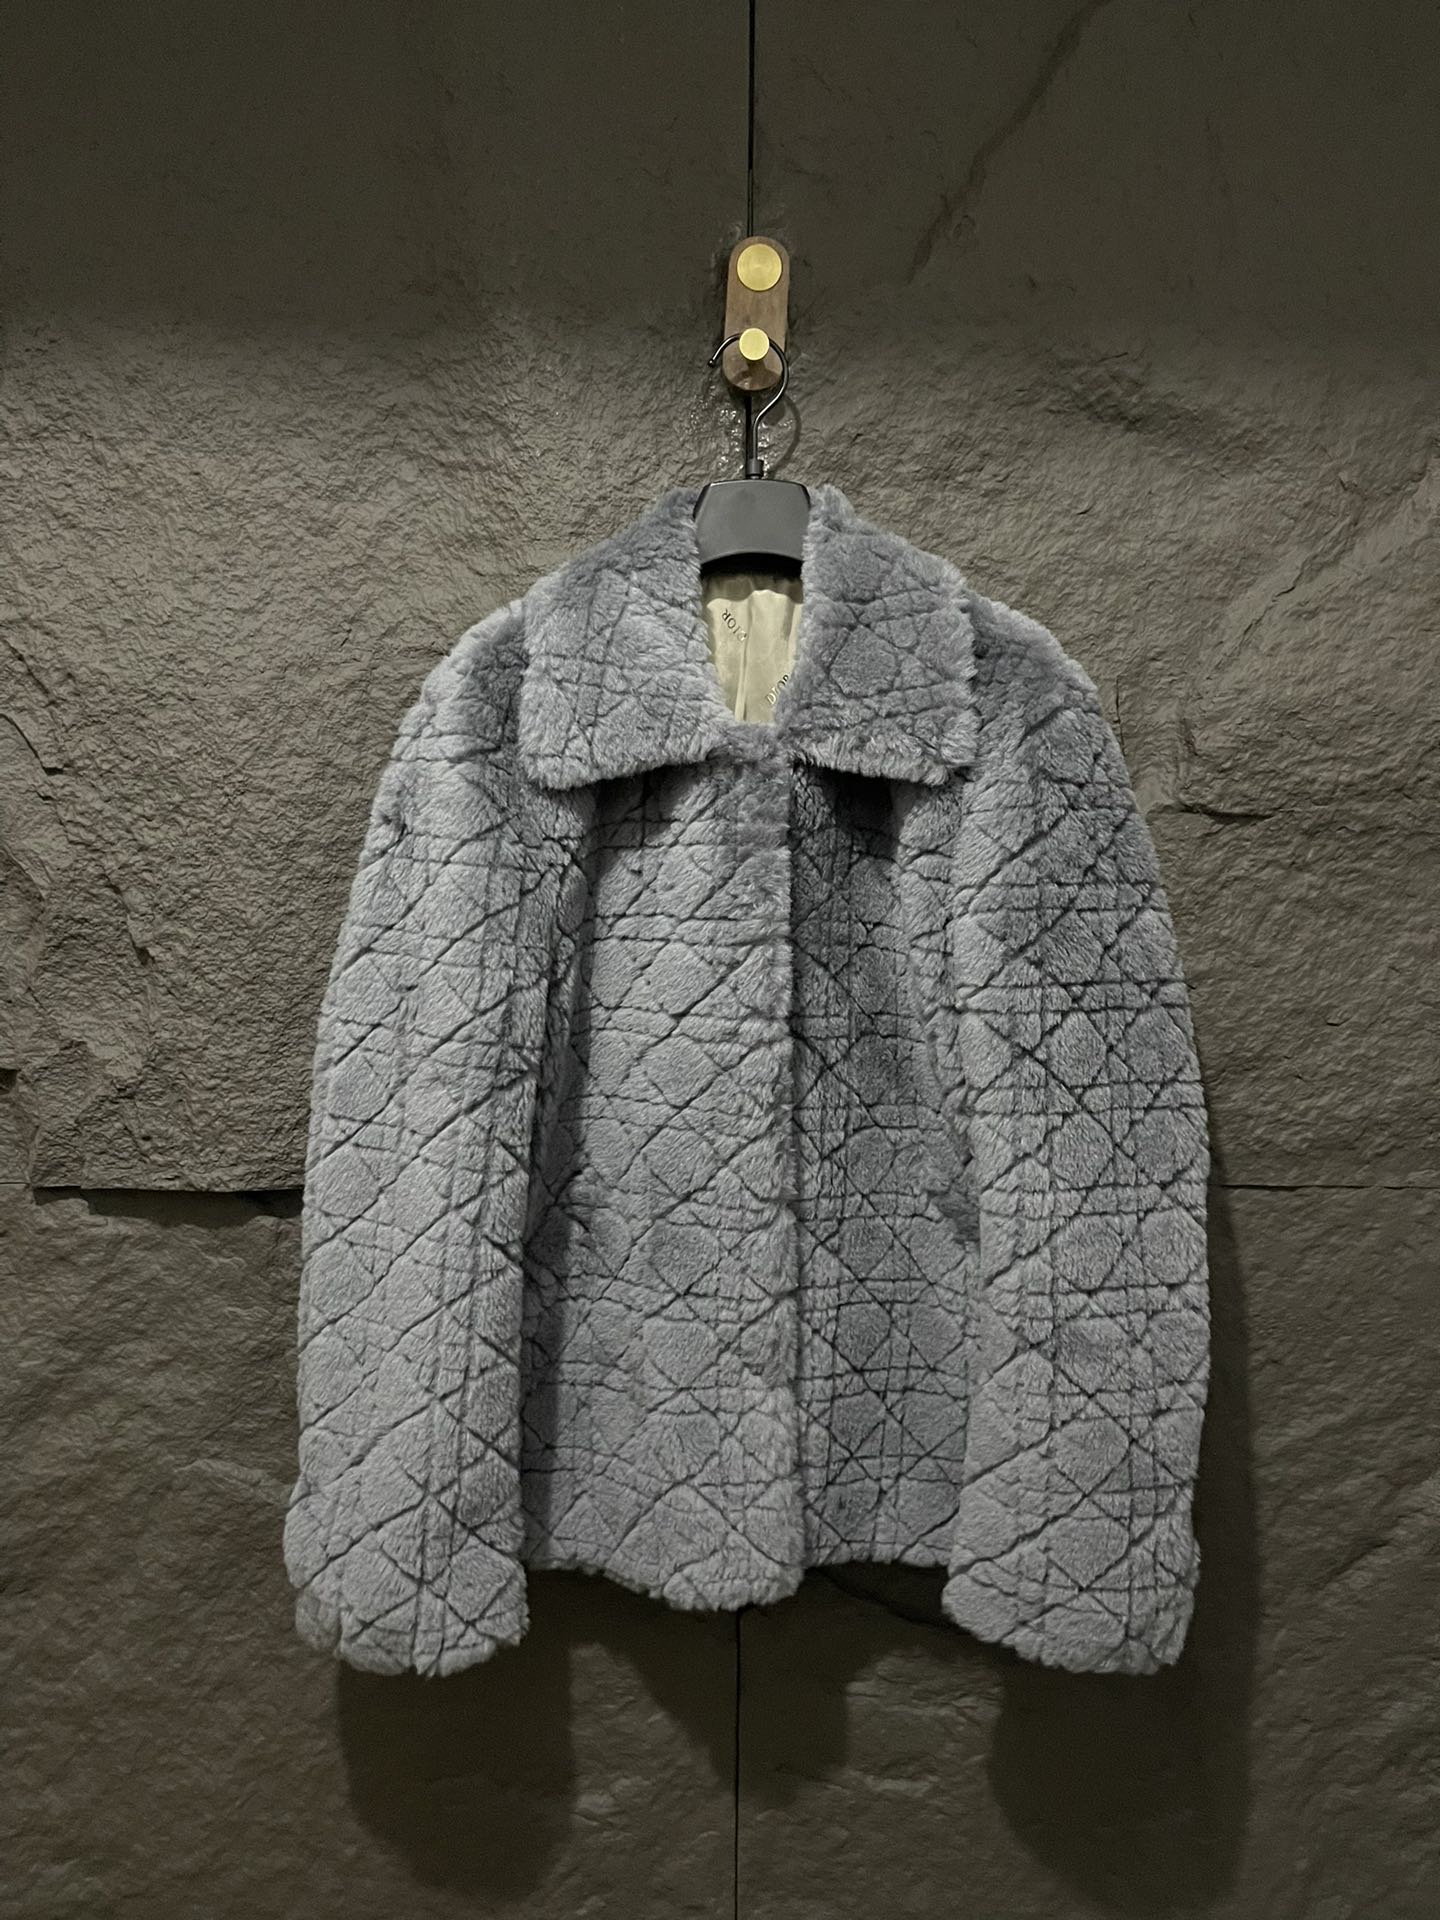 激安通販のディオールジャケット偽物 羊毛素材  オリジナルを再現_1